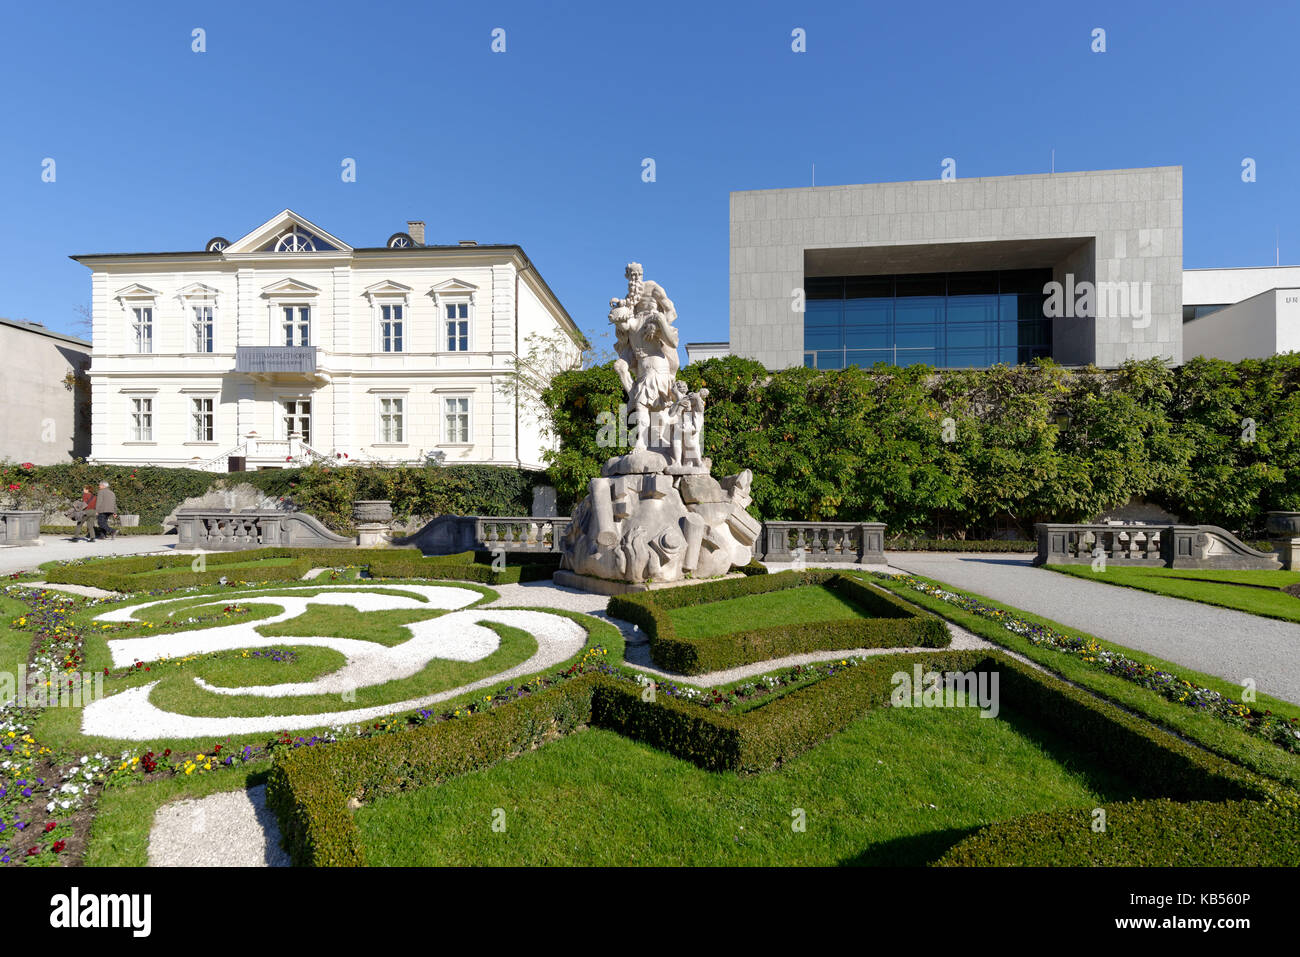 Austria, Salisburgo, centro storico sono classificati come patrimonio mondiale dall'UNESCO, i giardini del castello di Mirabell e l'Università di Musica di Mozarteum Foto Stock